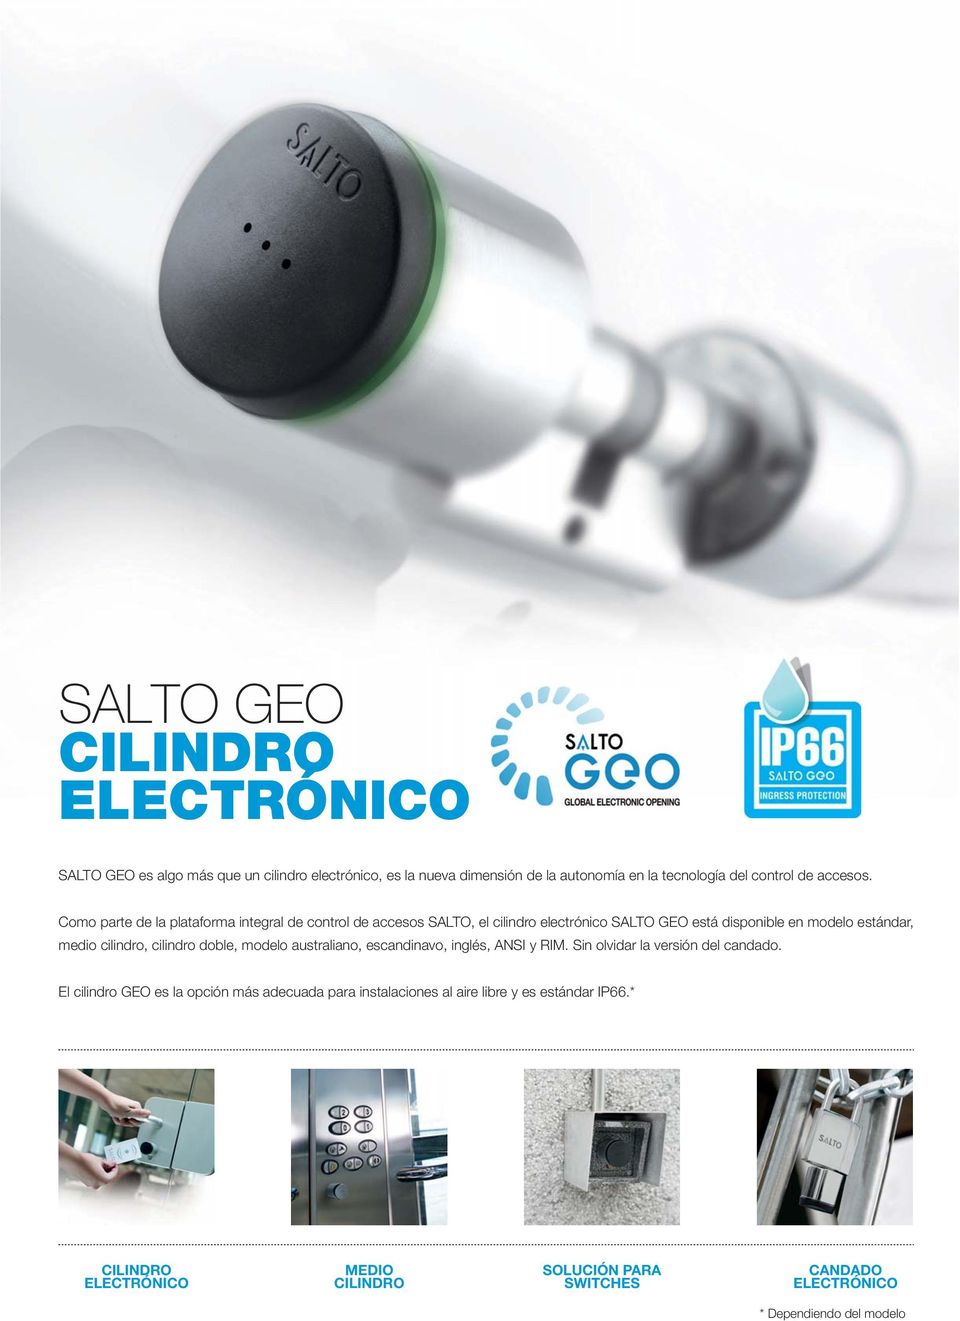 Como parte de la plataforma integral de control de accesos SALTO, el cilindro electrónico SALTO GEO está disponible en modelo estándar, medio cilindro,